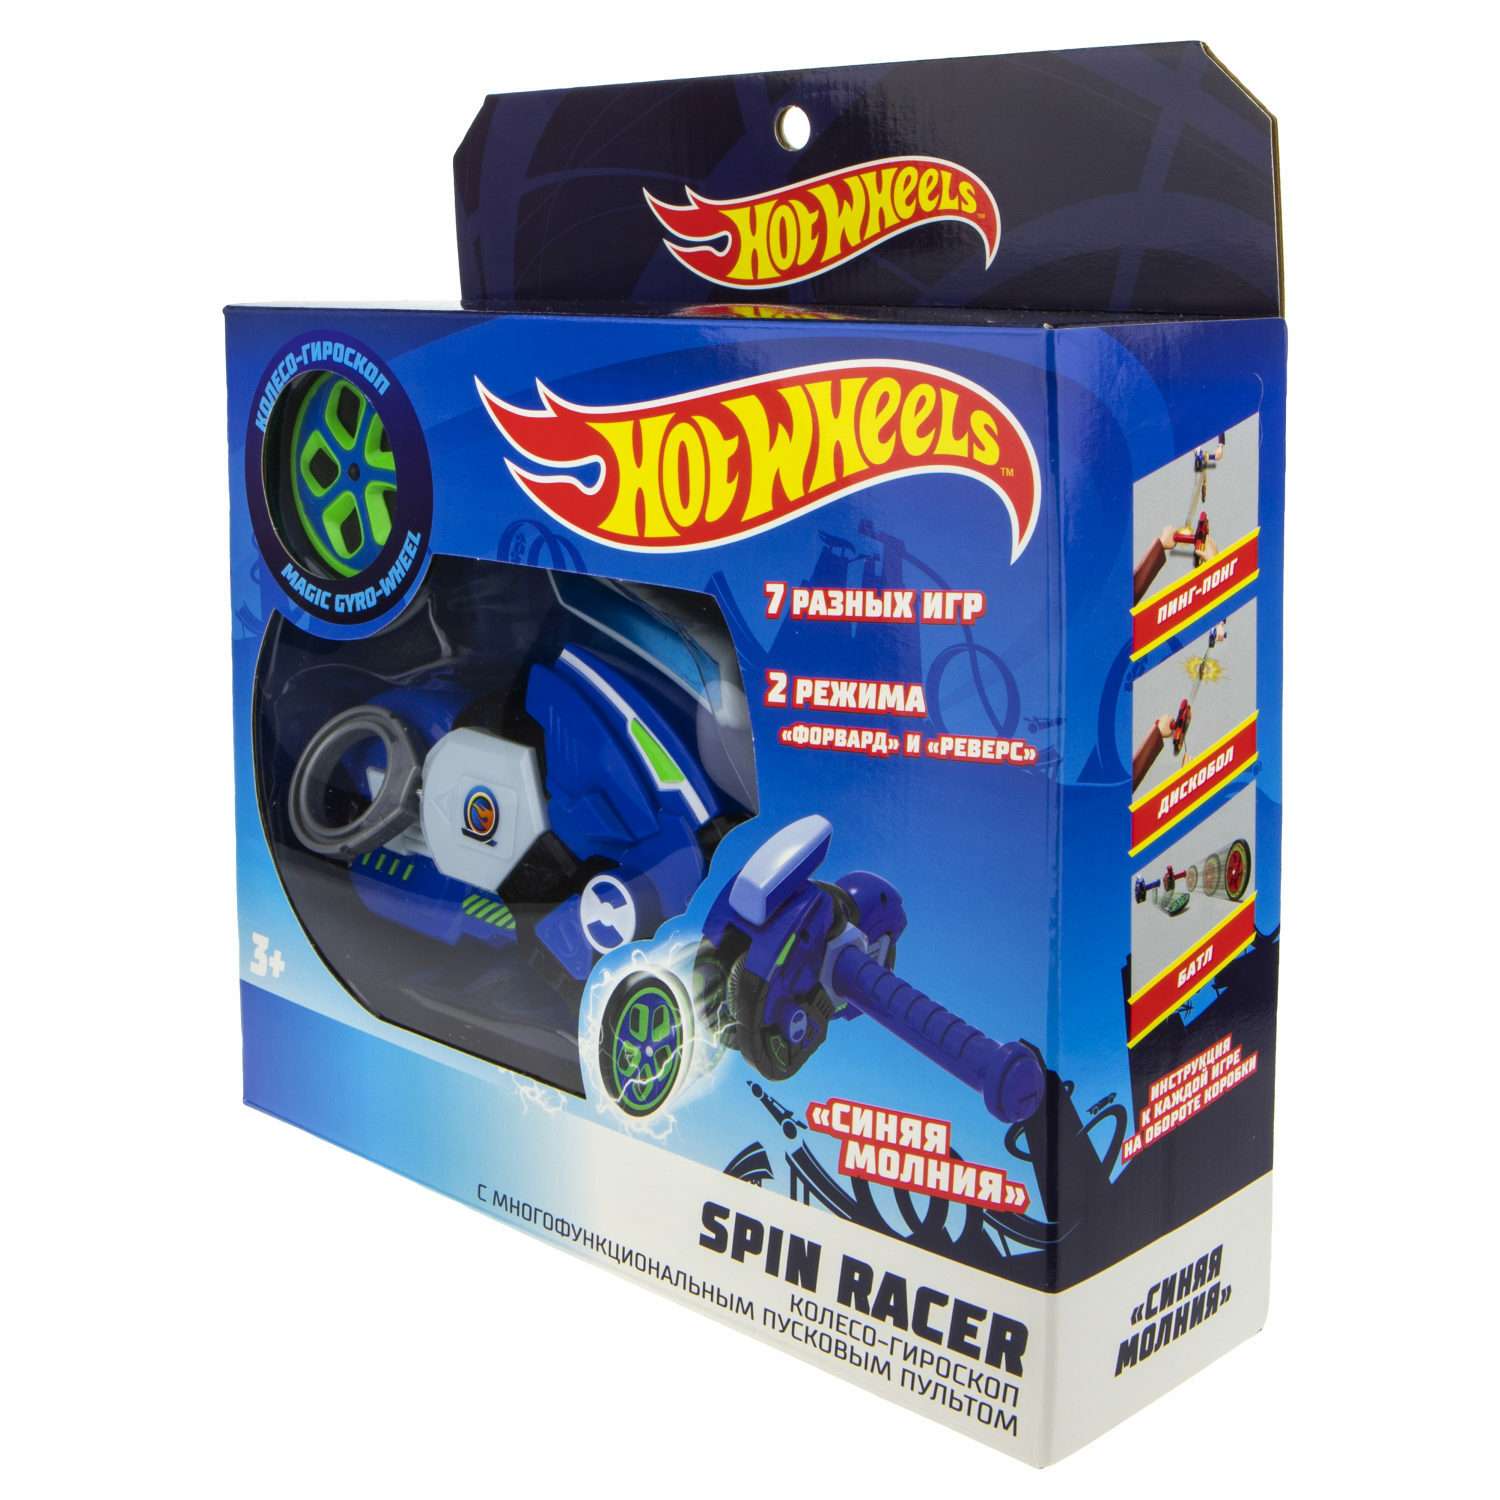 Игровой набор Hot Wheels Spin Racer Синяя Молния игрушечный мотоцикл с колесом-гироскопом Т19373 - фото 9